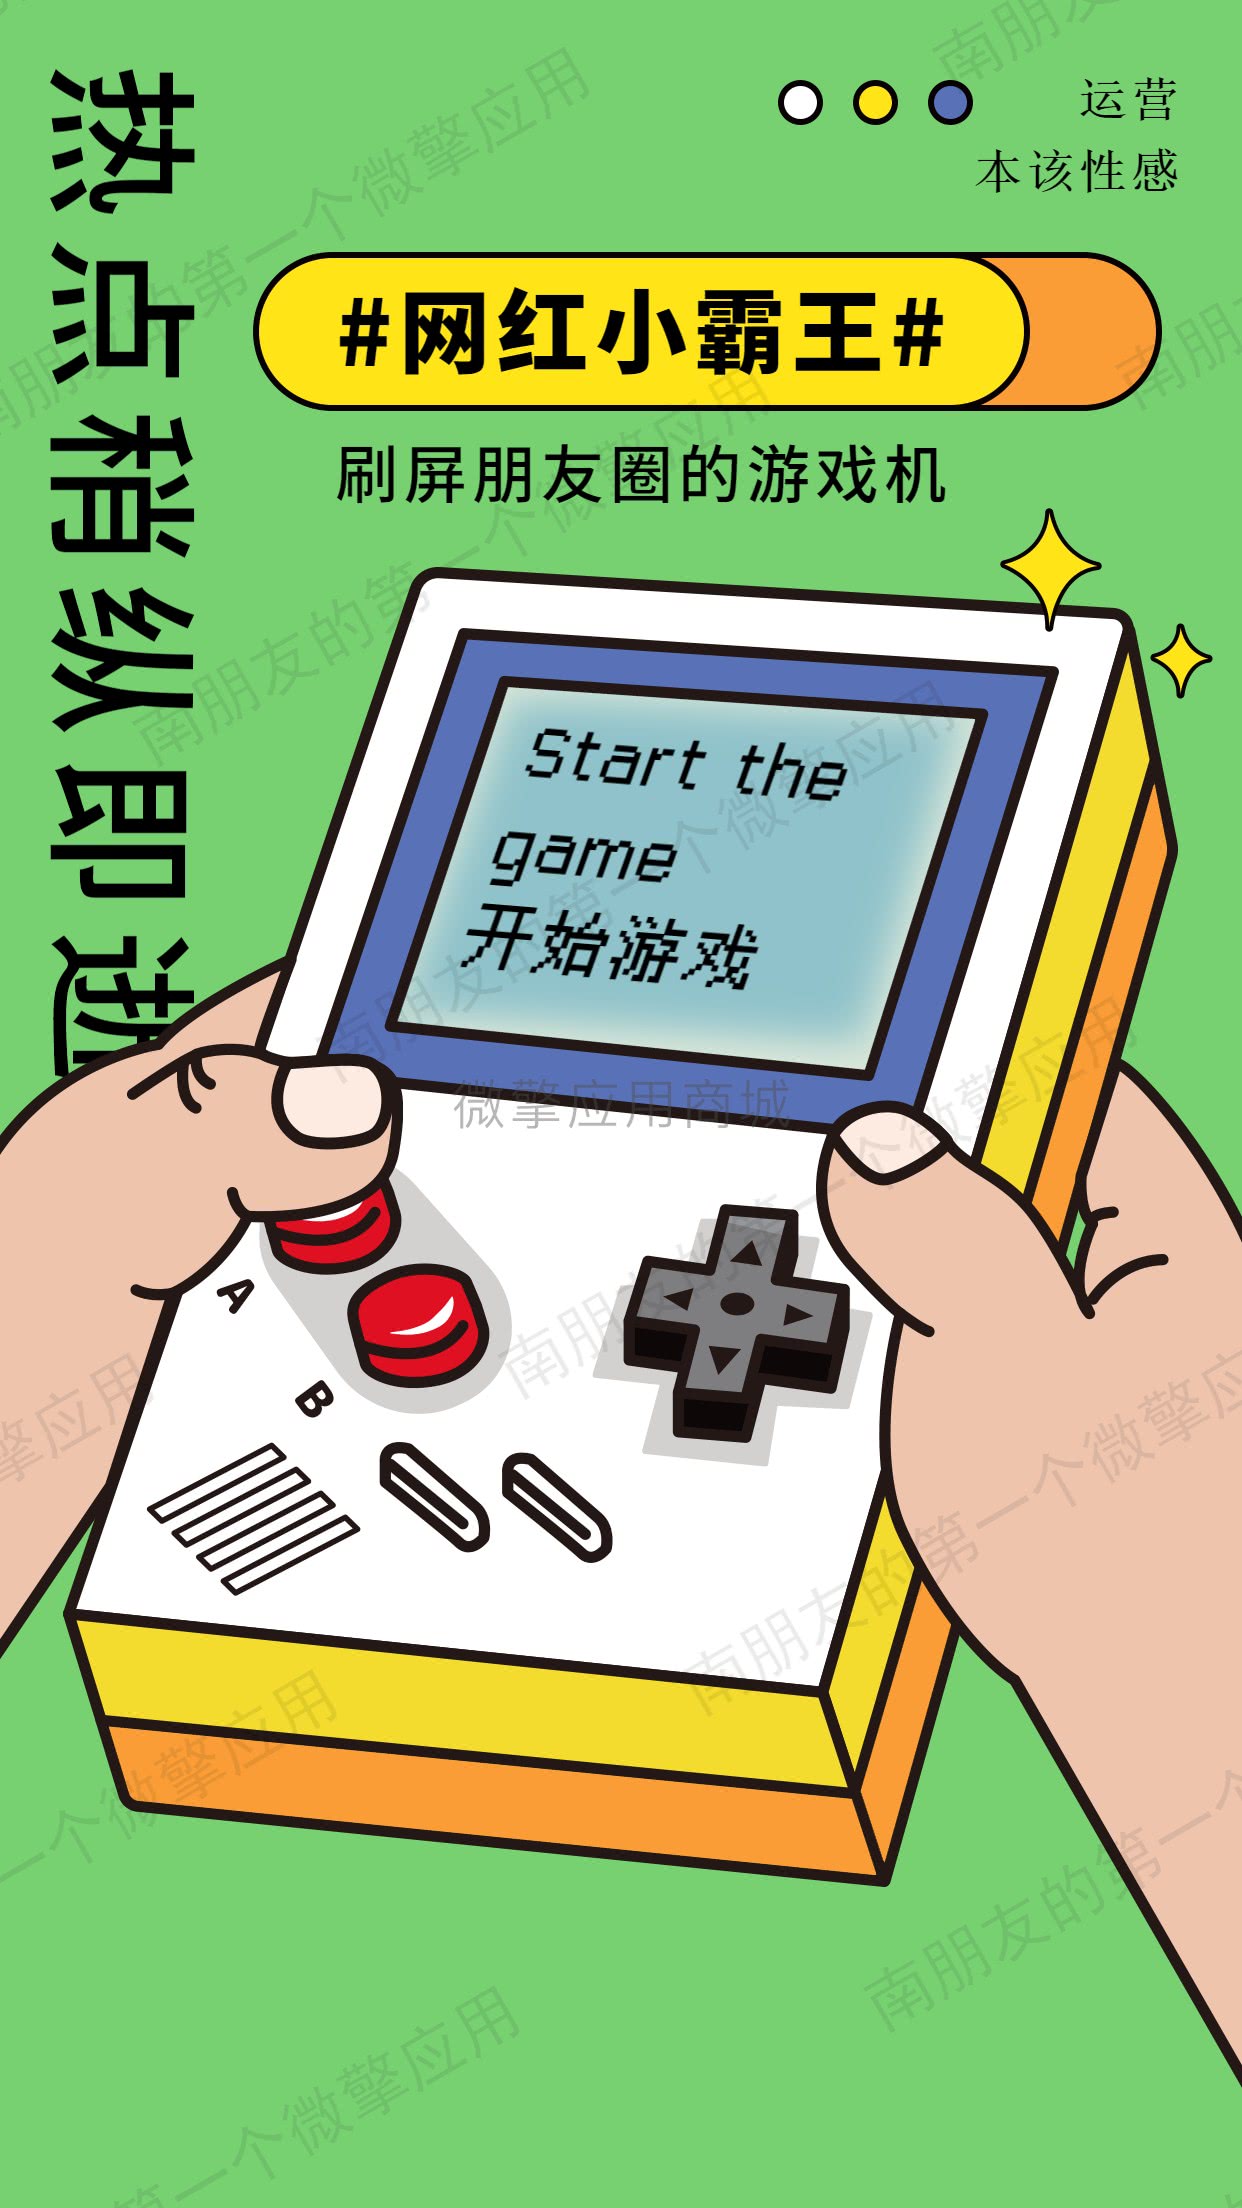 网红小霸王游戏机-2.0.1小程序源码